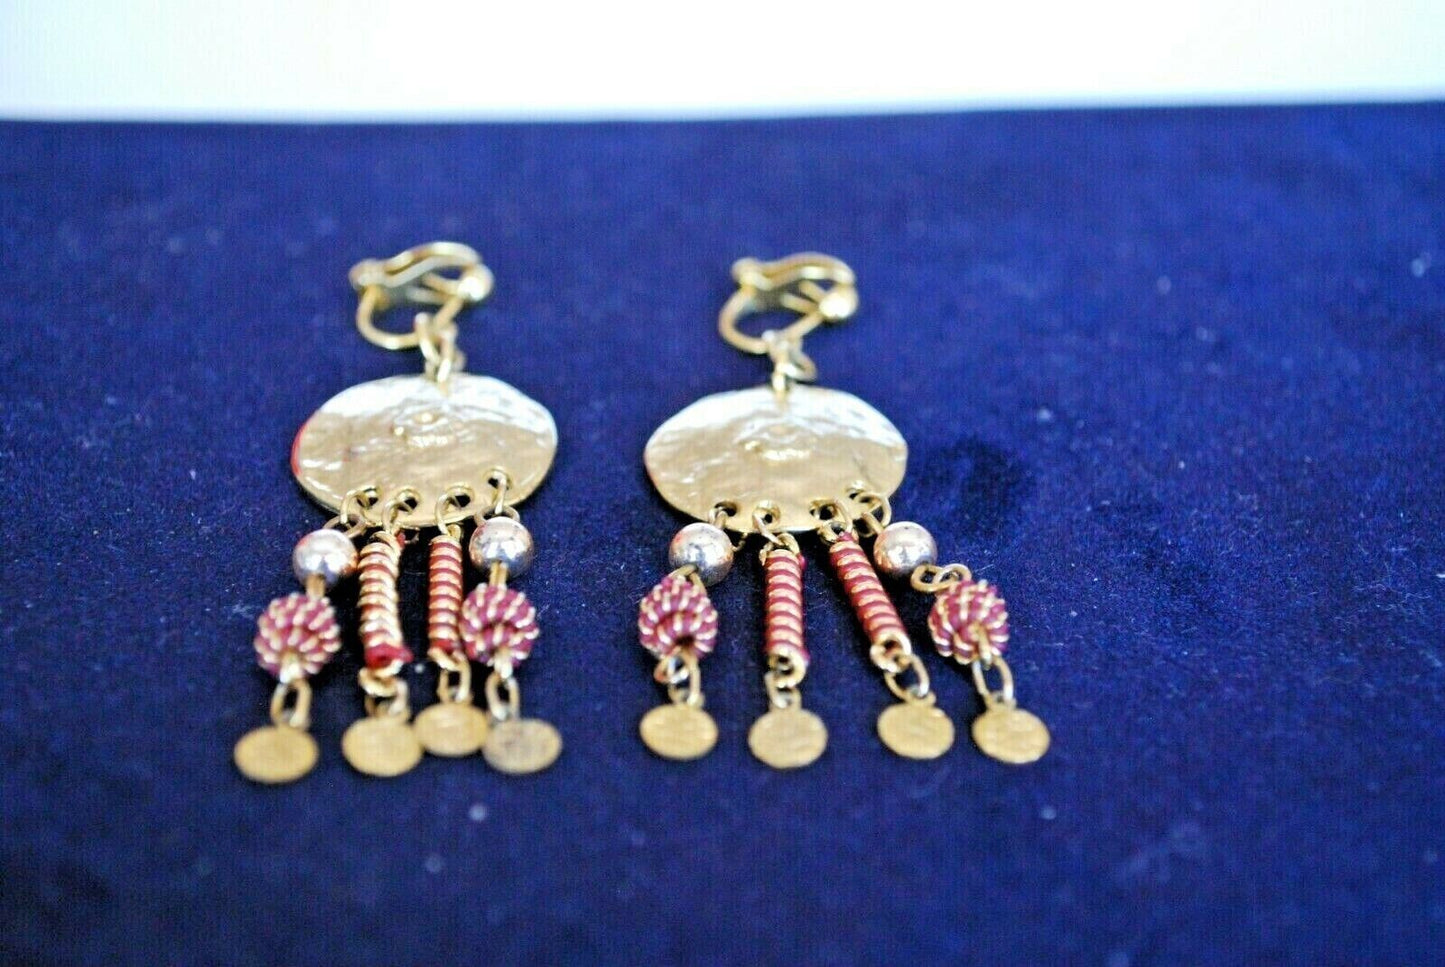 Vintage earrings